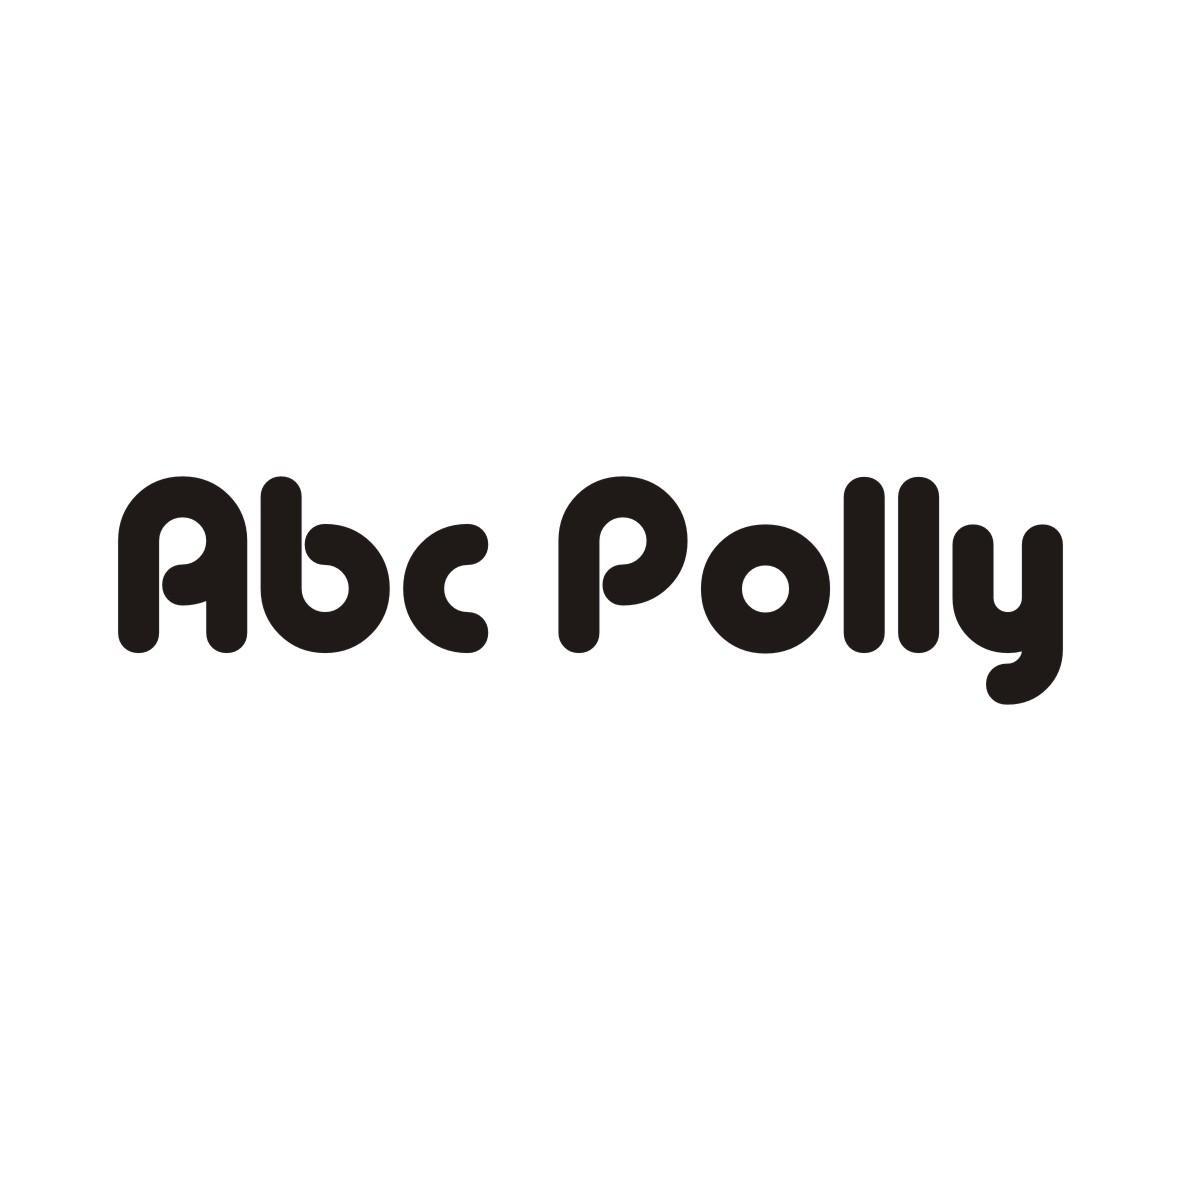 ABC POLLY